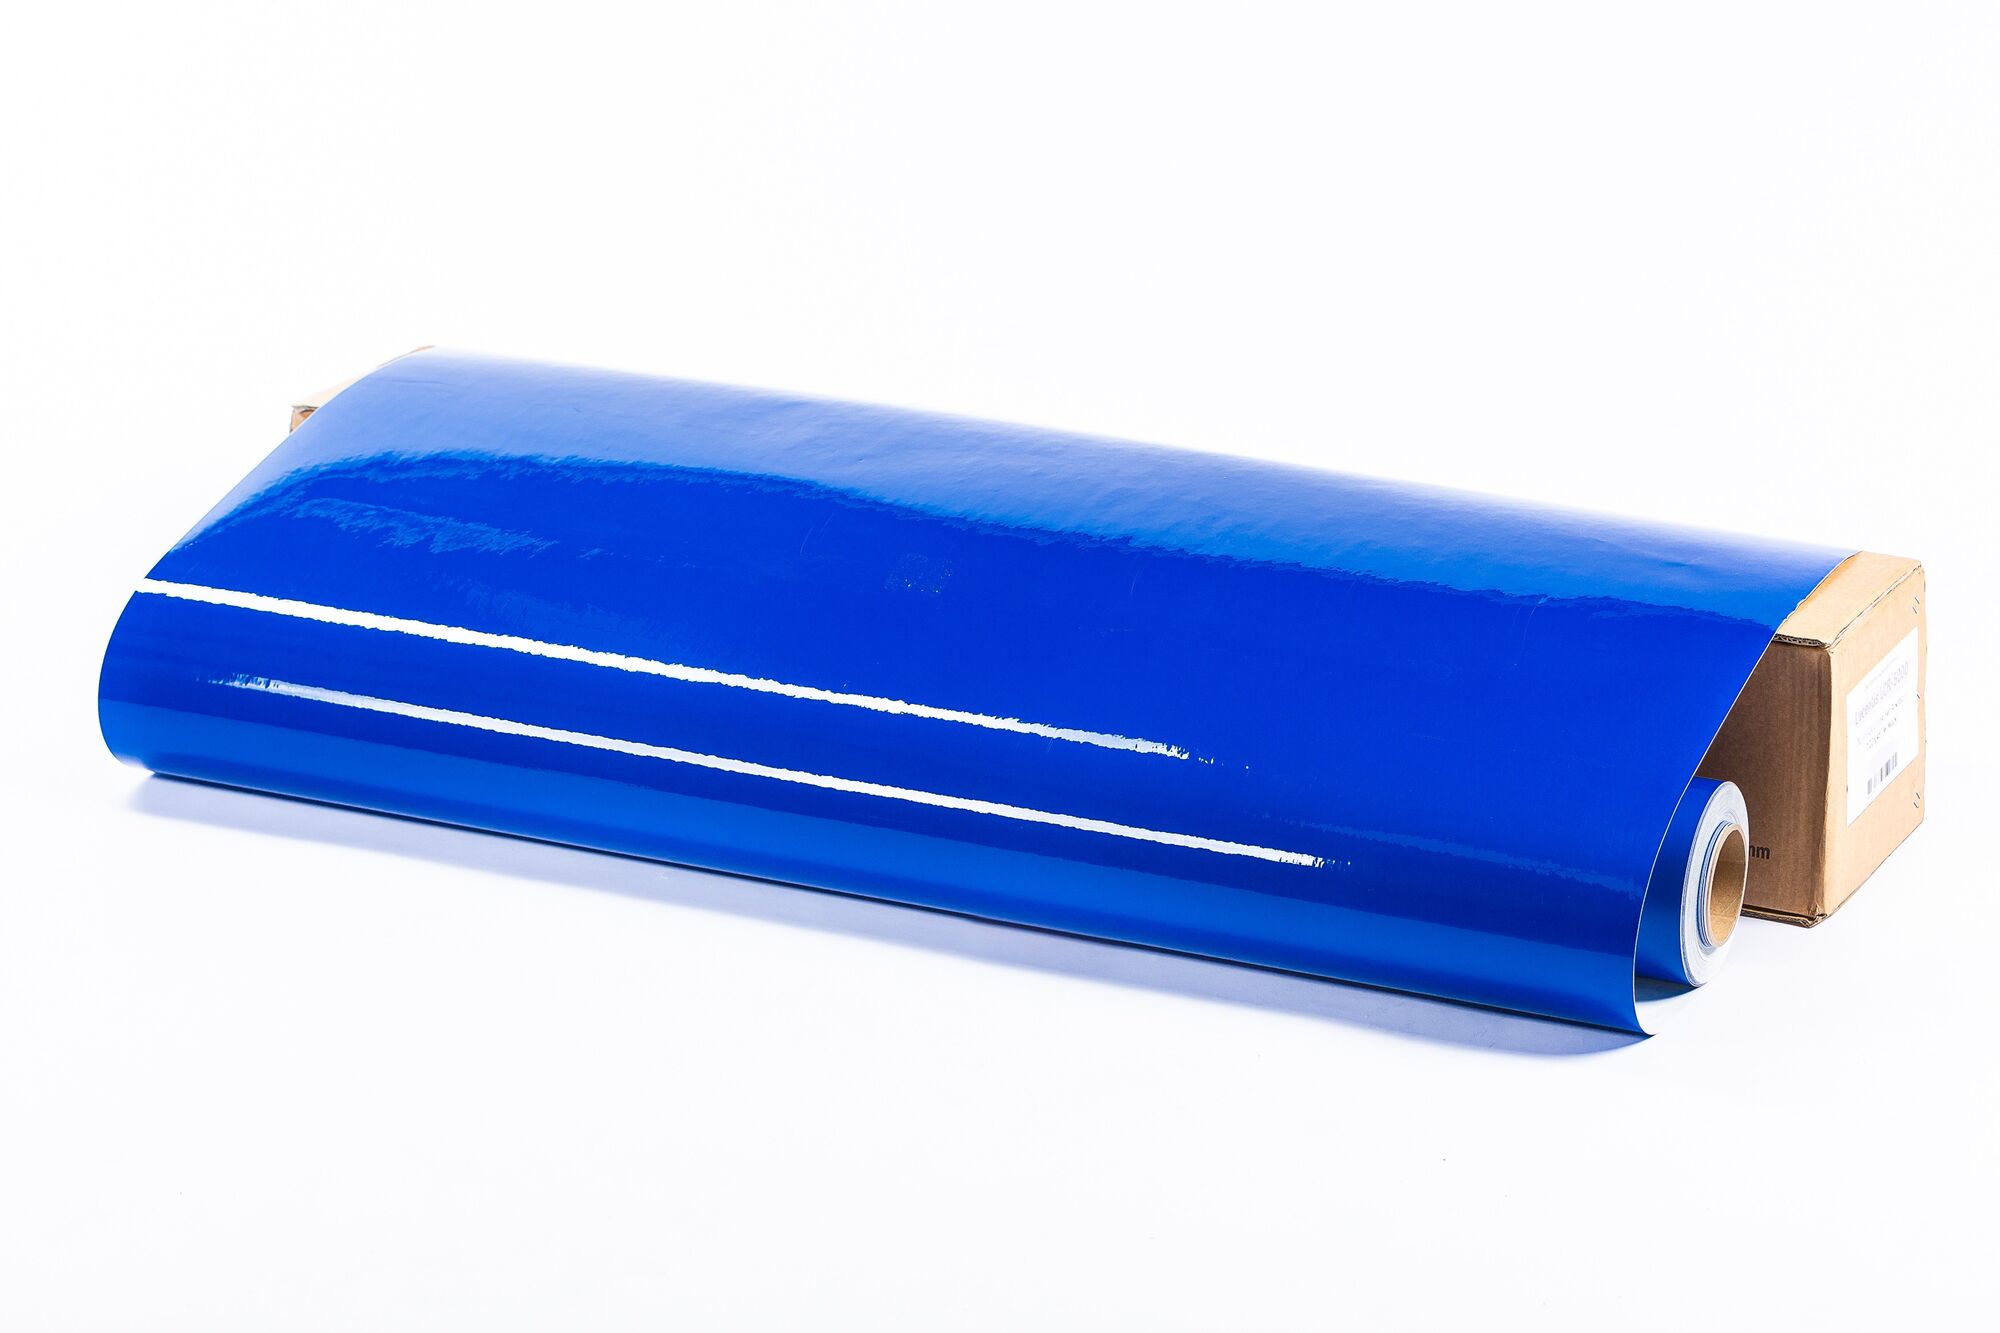 Световозвращающая пленка Lucentis LCR-5000 печатная синяя, тип А, класс I 1,22х45,7м (с маркировкой) 1 стык (о4542)